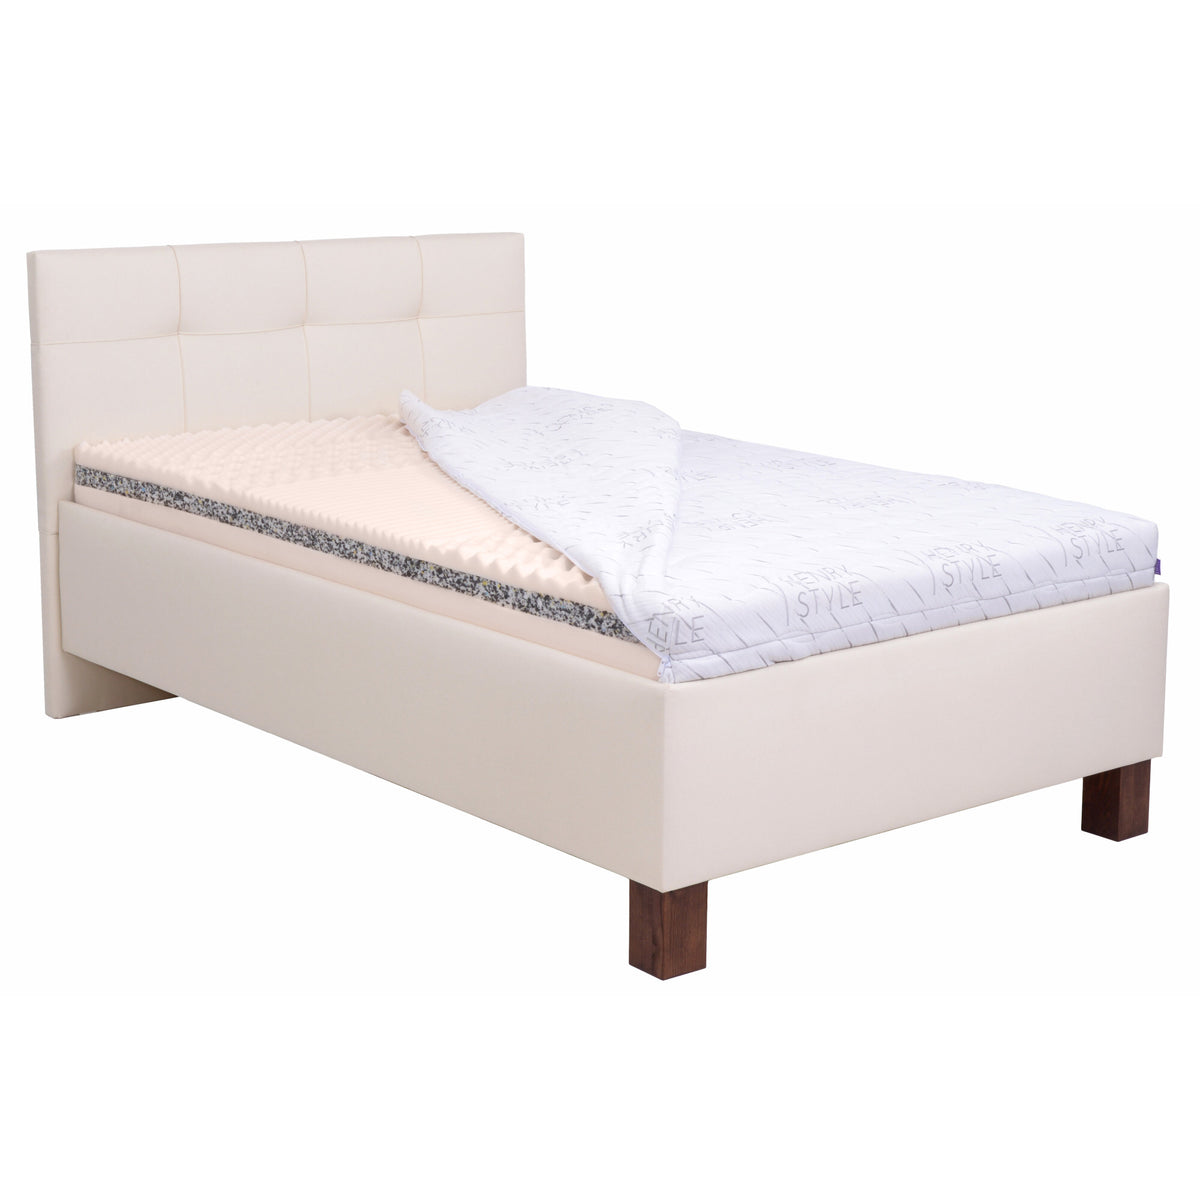 Čalouněná postel Mary 140x200, béžová, včetně matrace